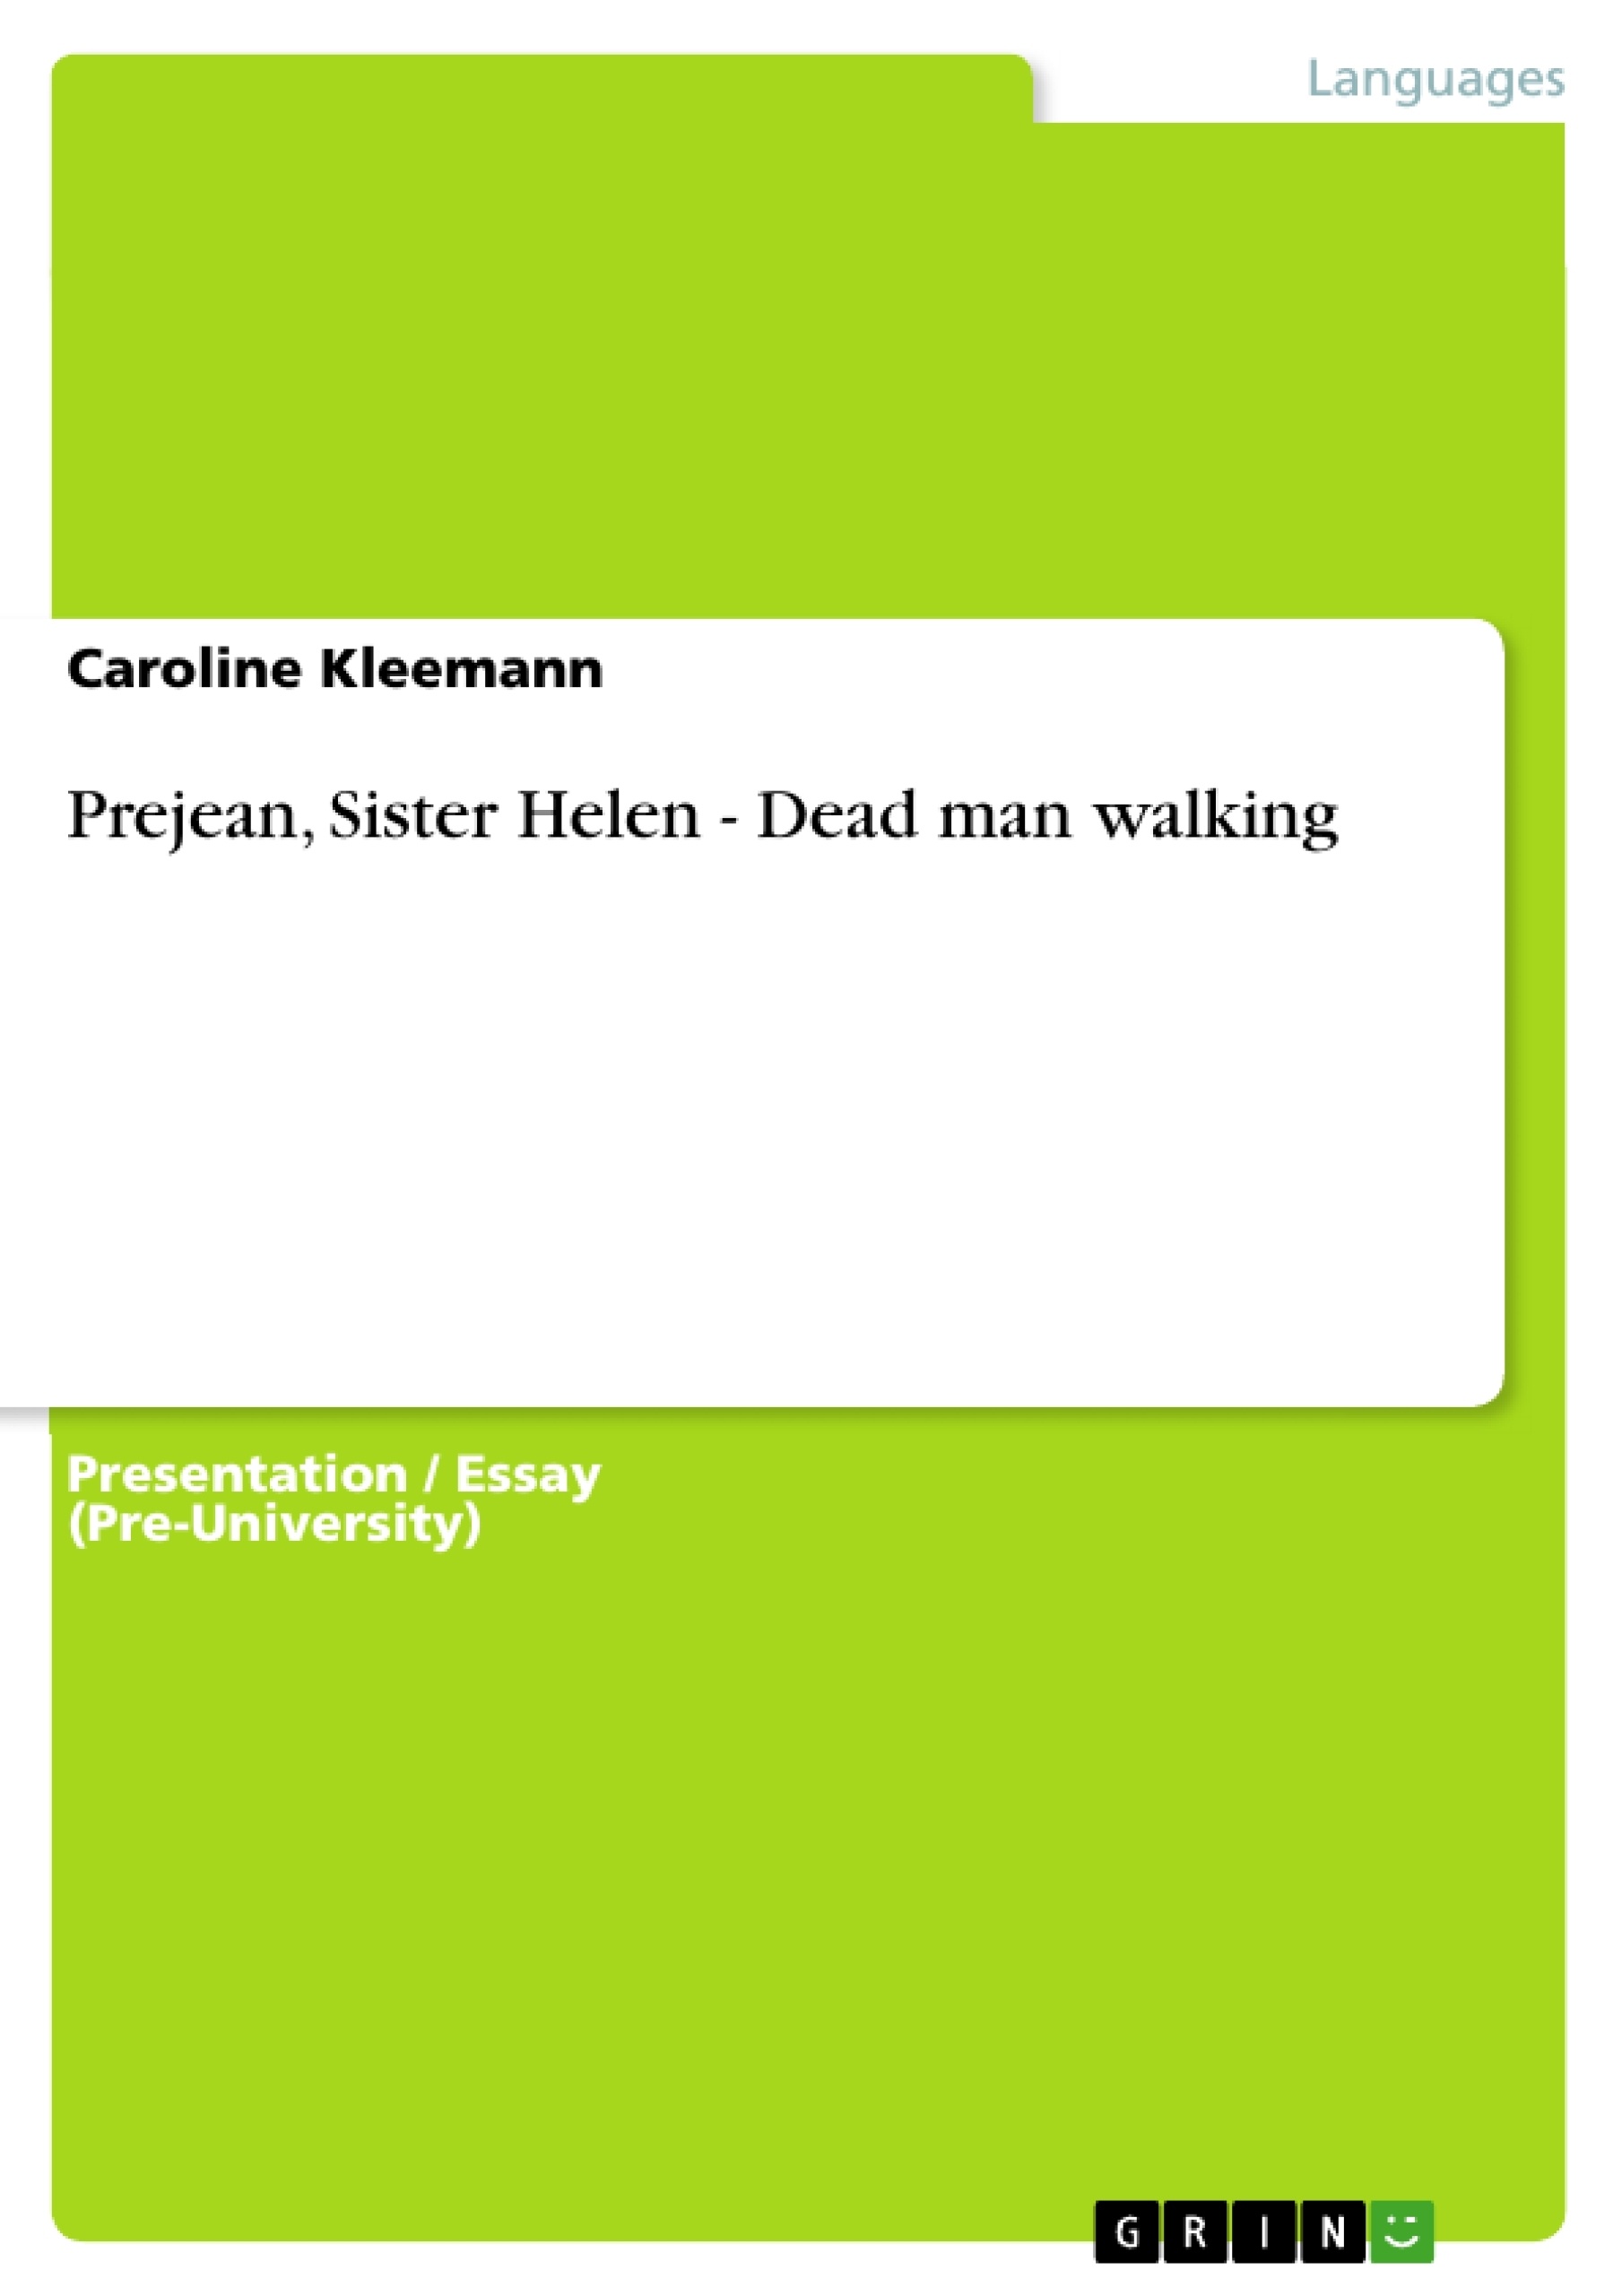 Title: Prejean, Sister Helen - Dead man walking